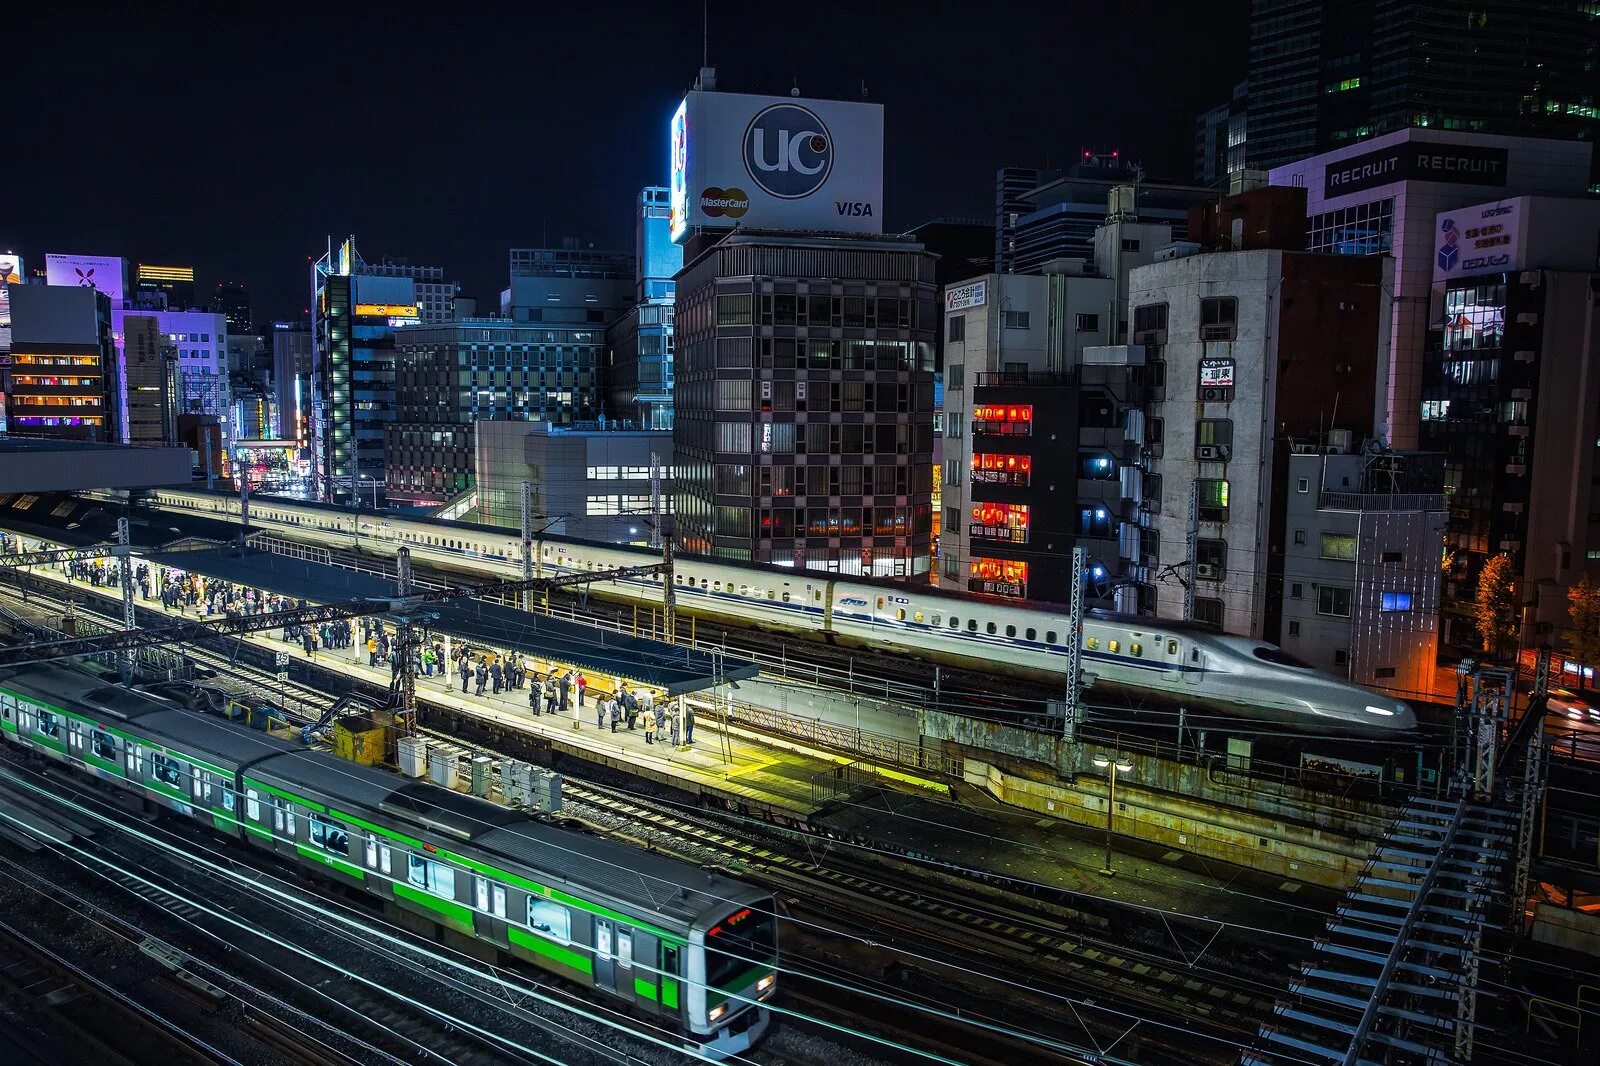 Япония, Токио — Осака железная дорога. Оита Япония железная дорога. Япония Эстетика Токио станция. Токио поезда Jr.